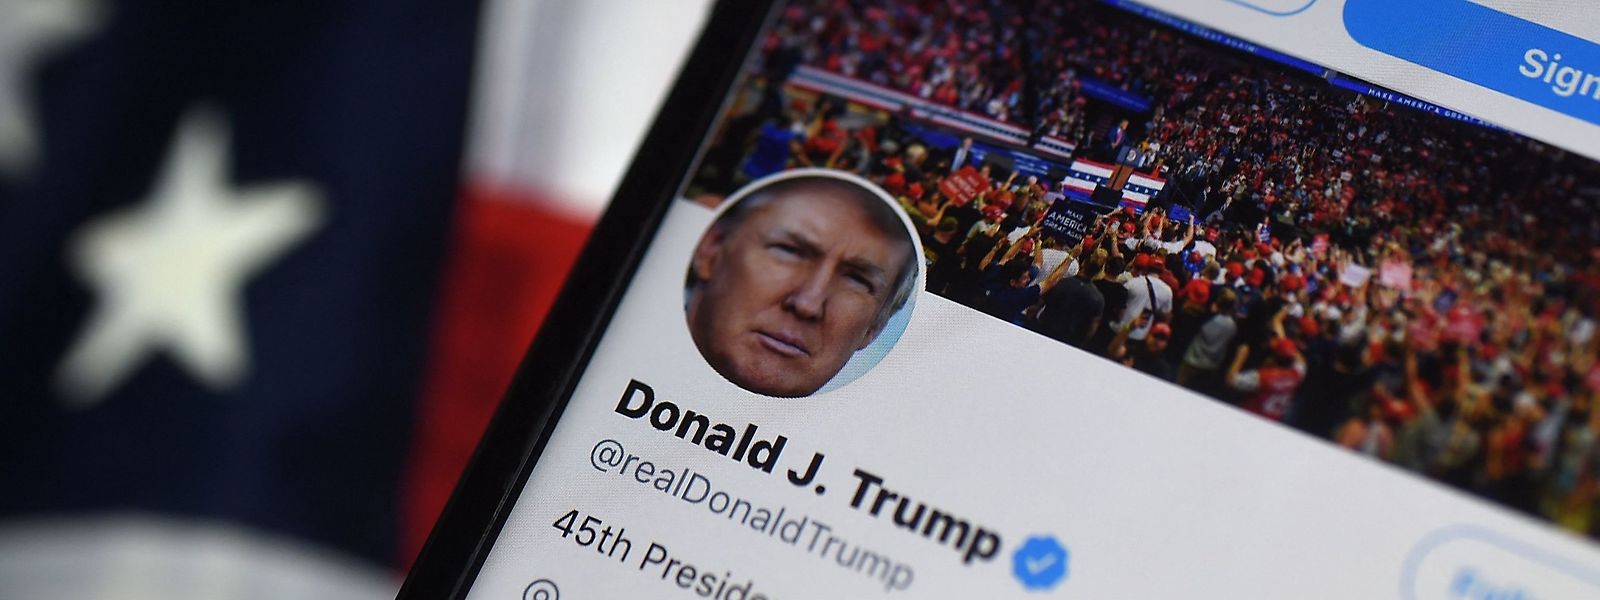 Le compte de l'ancien président américain Donald Trump a déjà été réhabilité samedi dernier.